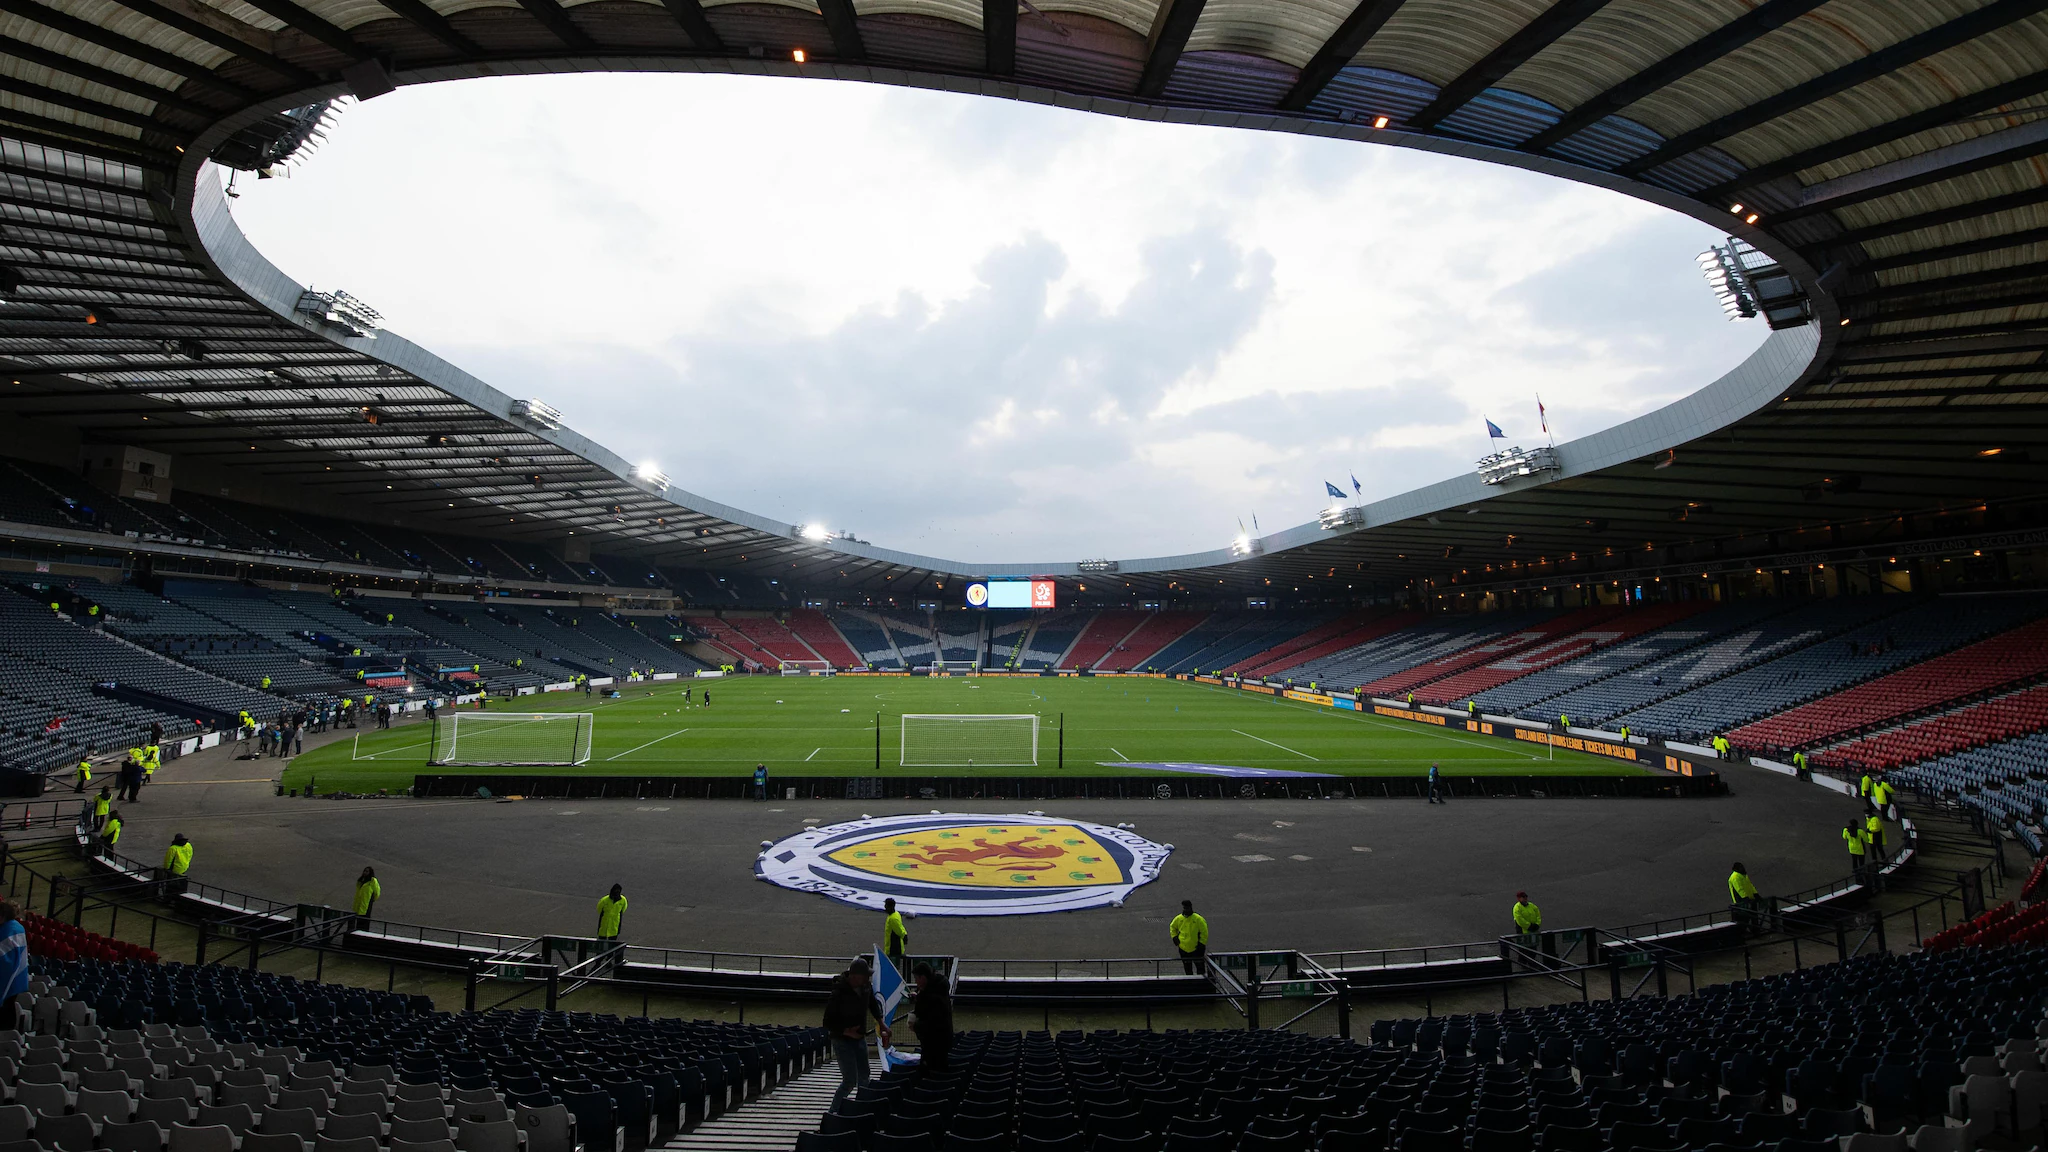  Scotland - Ukraine change final against Wales |  UEFA Nations League

